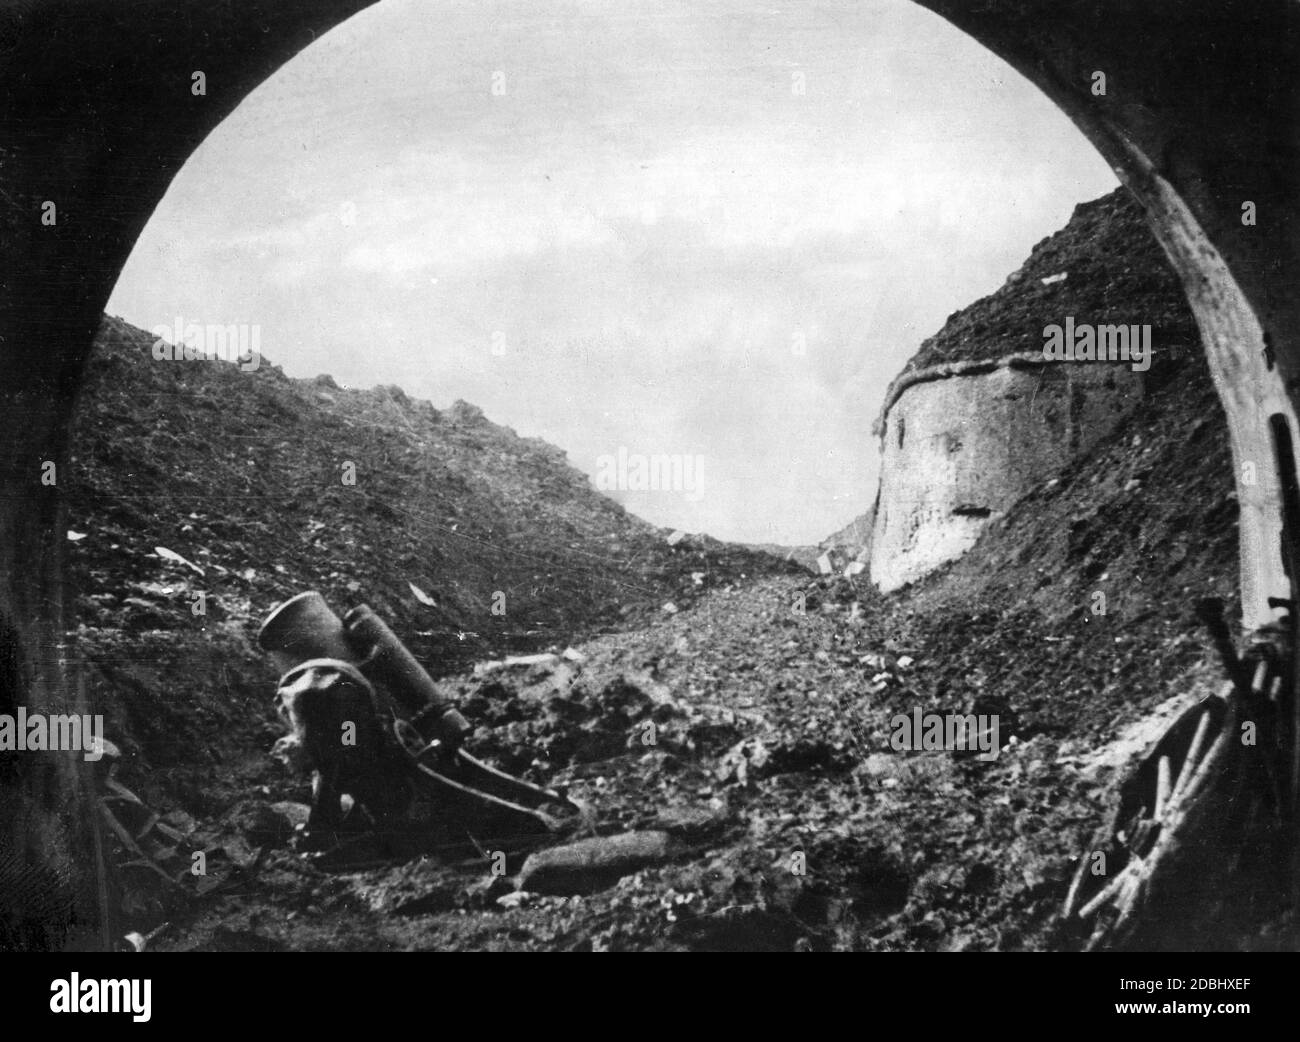 1916: Schlacht bei Verdun: Blick vom Eingang des Fort Douaumont nach der Eroberung durch deutsche Truppen. Auf der linken Seite ist ein deutscher Minenwerfer. Stockfoto